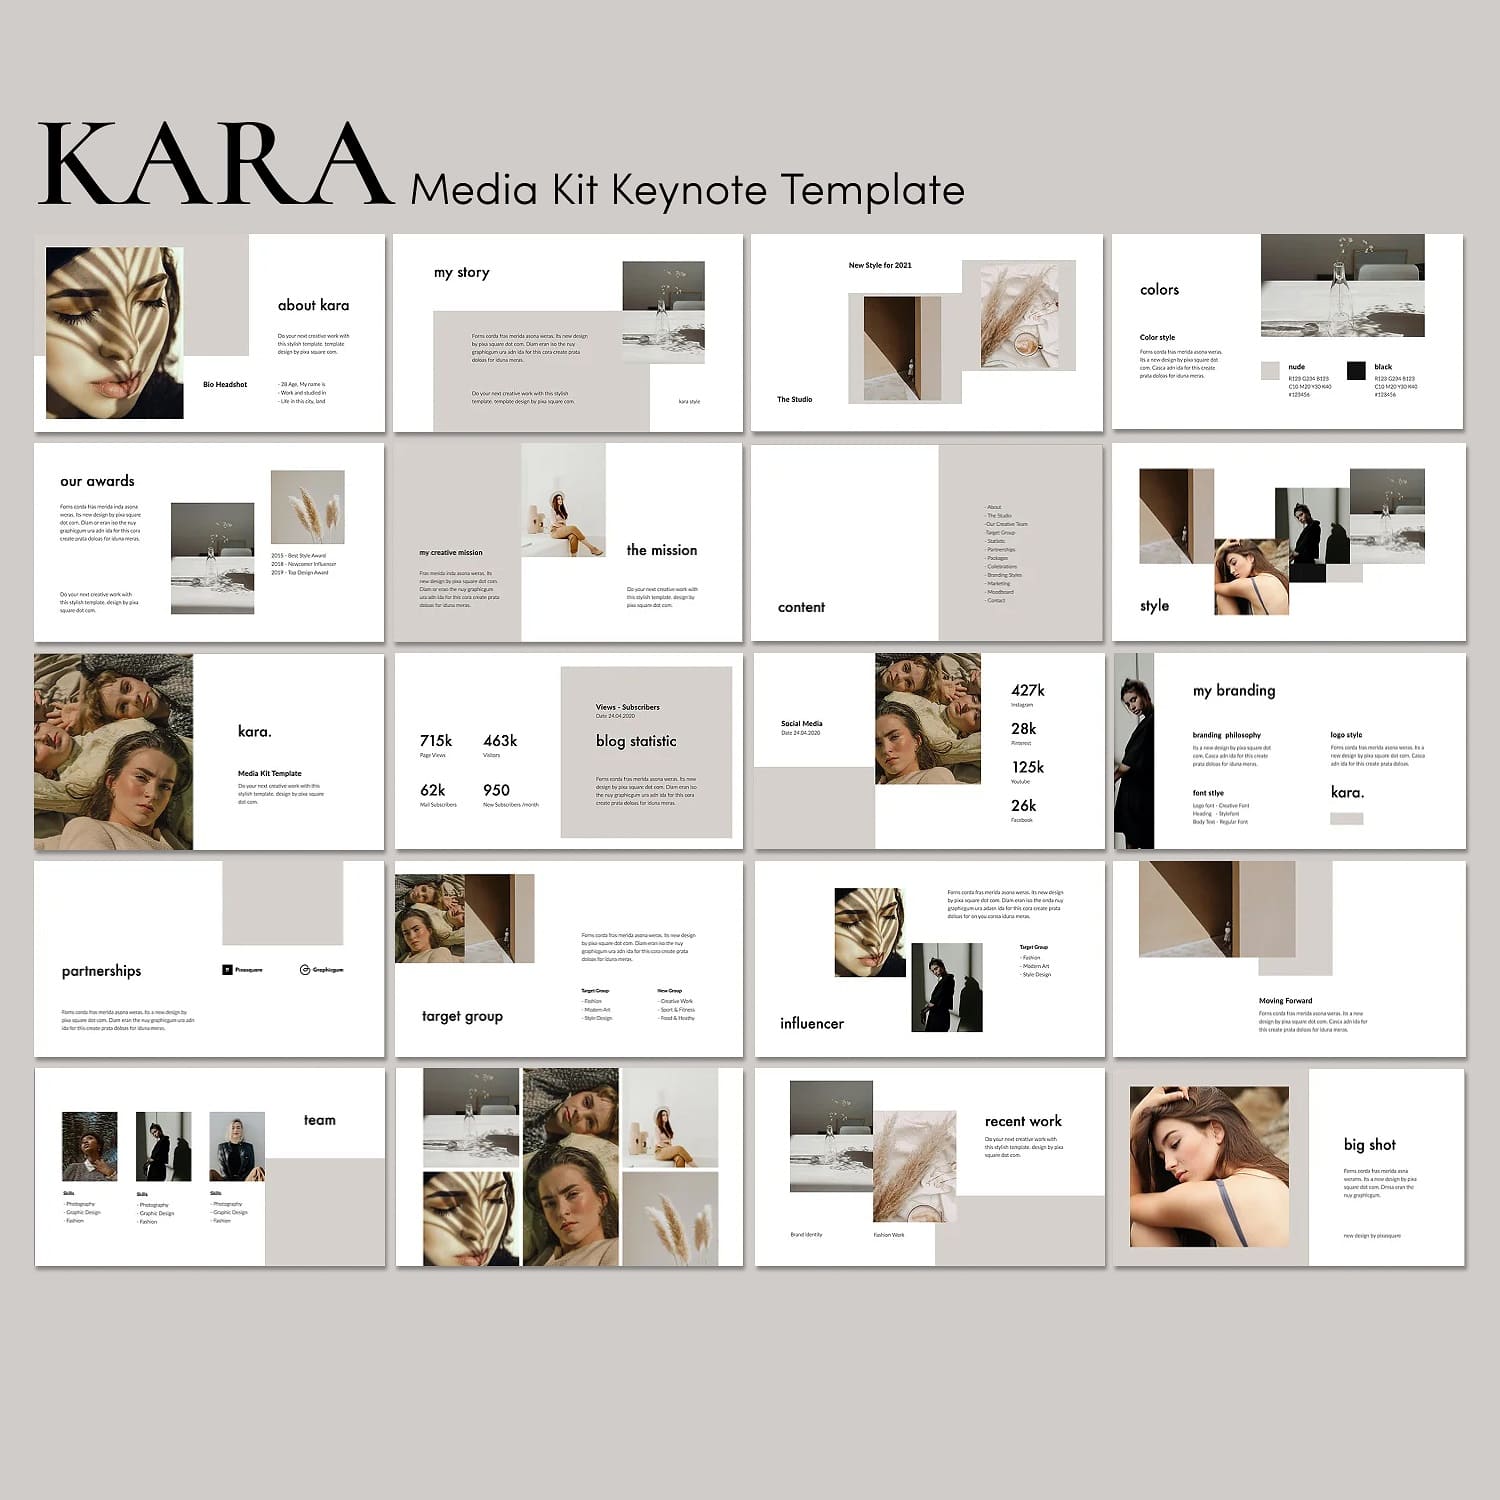 Recent work of Kara.